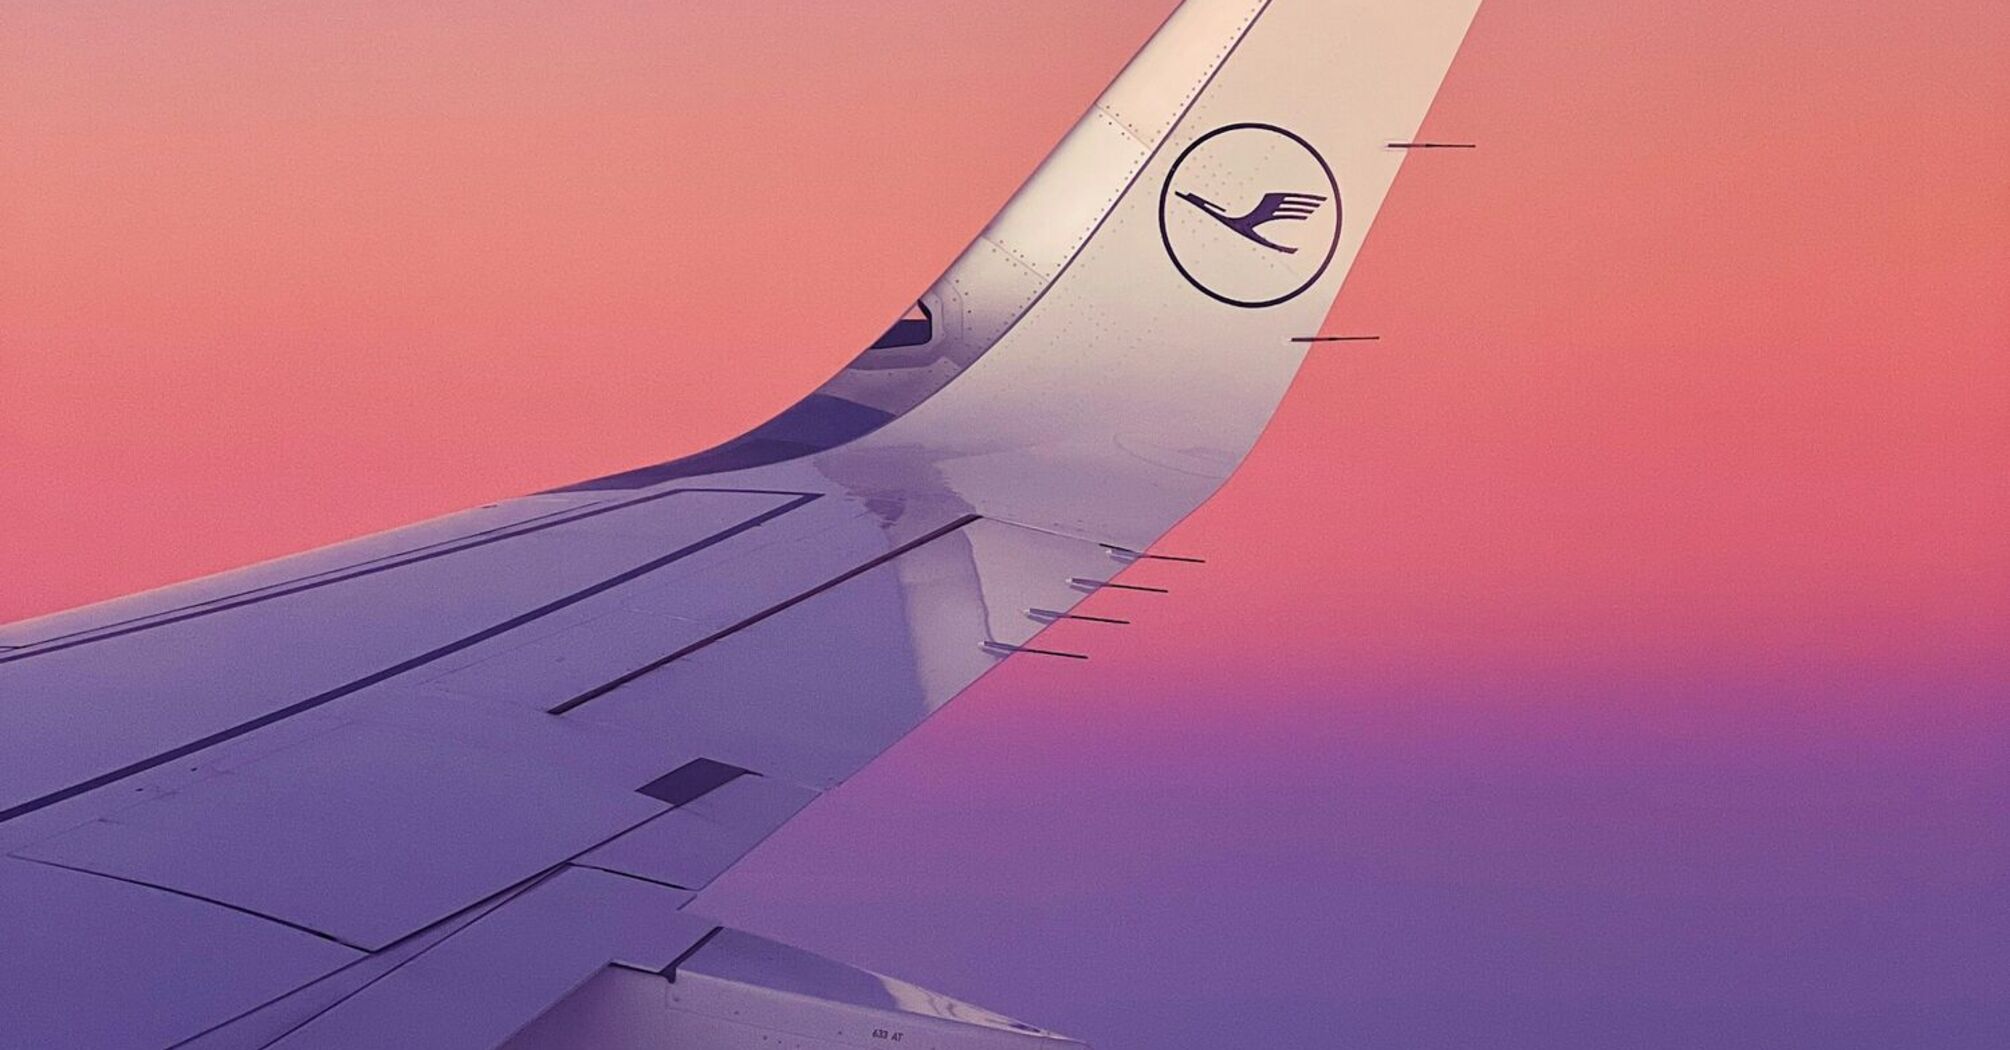 Lufthansa airplane wing during sunset